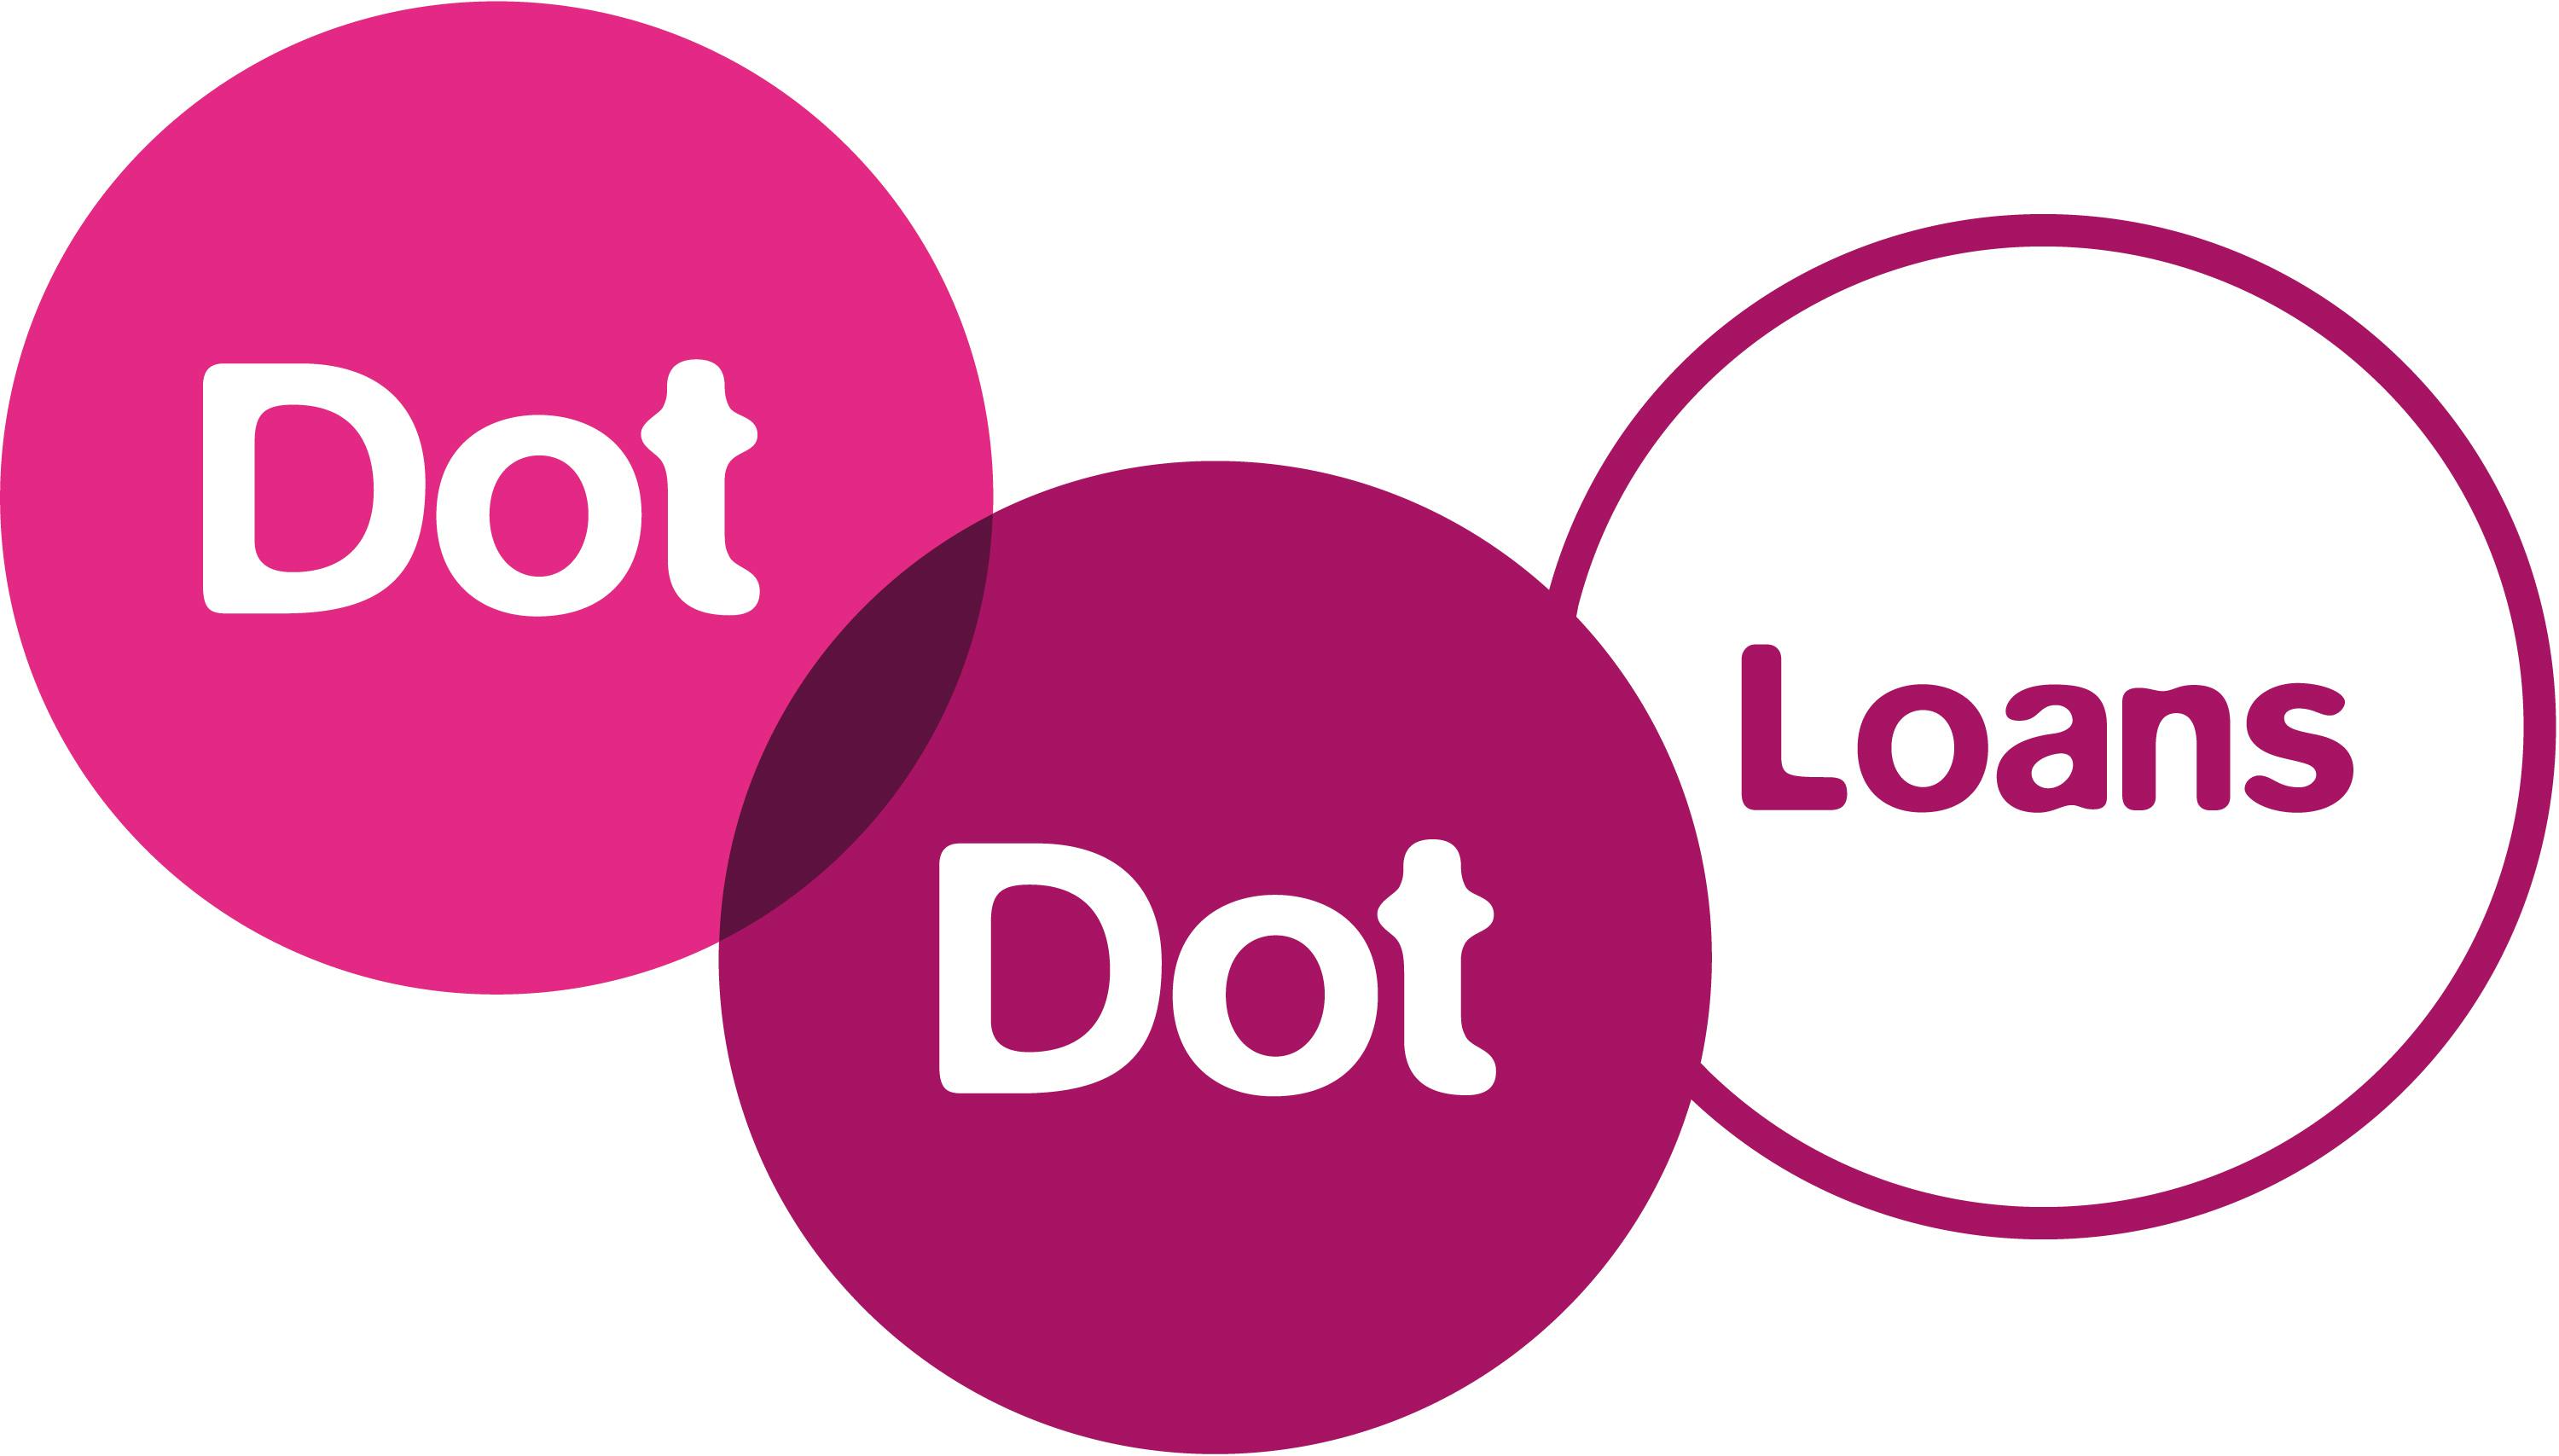 Dot Dot Loans-logo